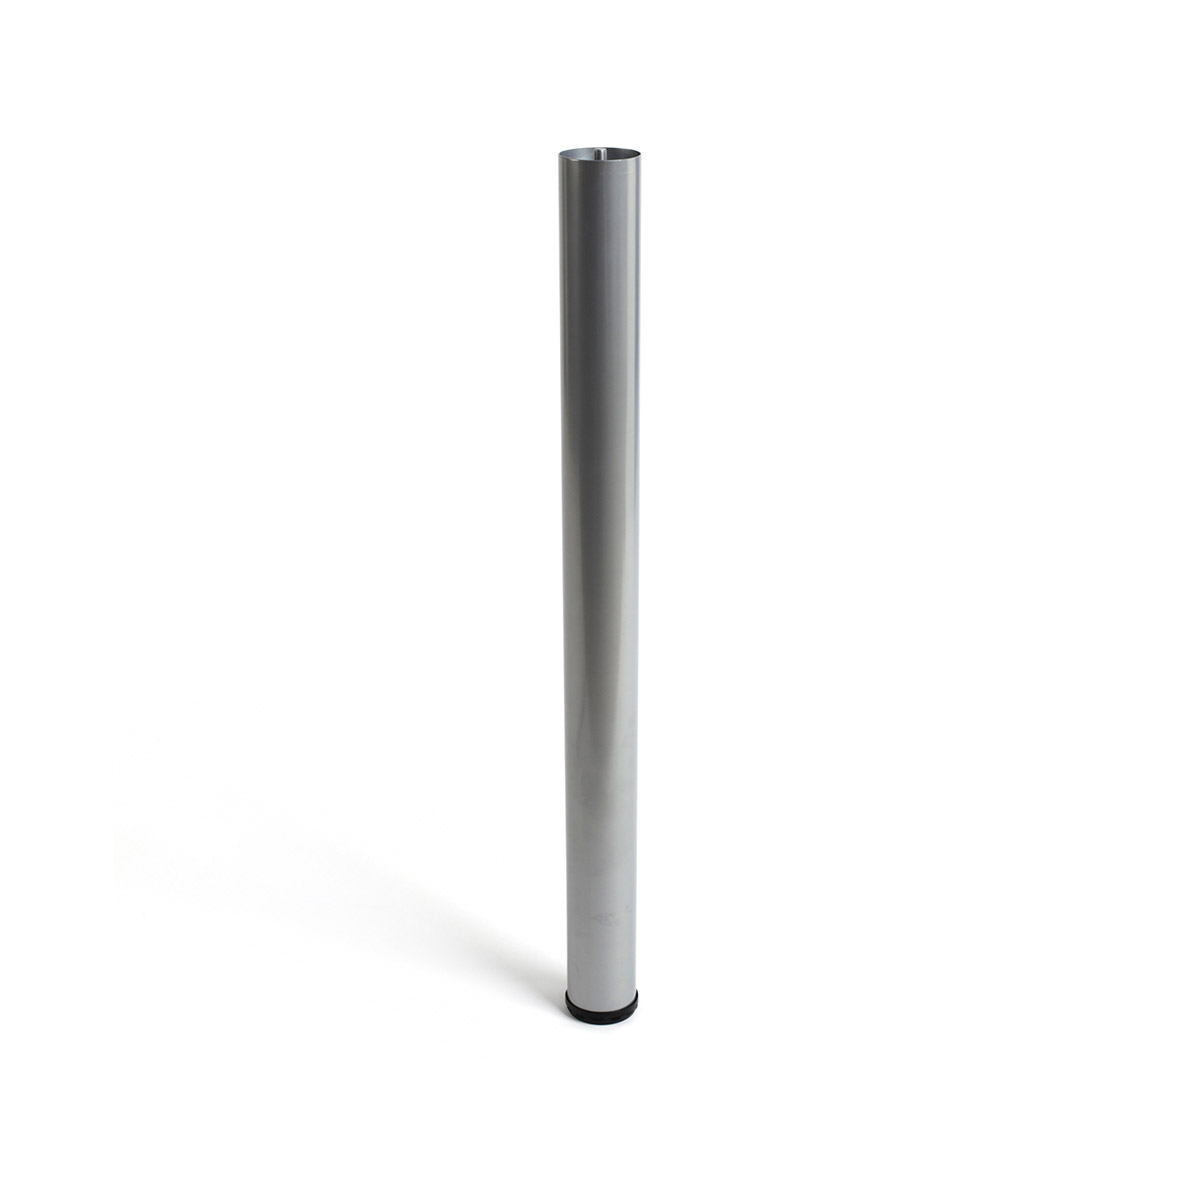 Pata de acero cilíndrica con una altura de 710 mm y acabada en aluminio. Dimensiones: 60x60x710 mm